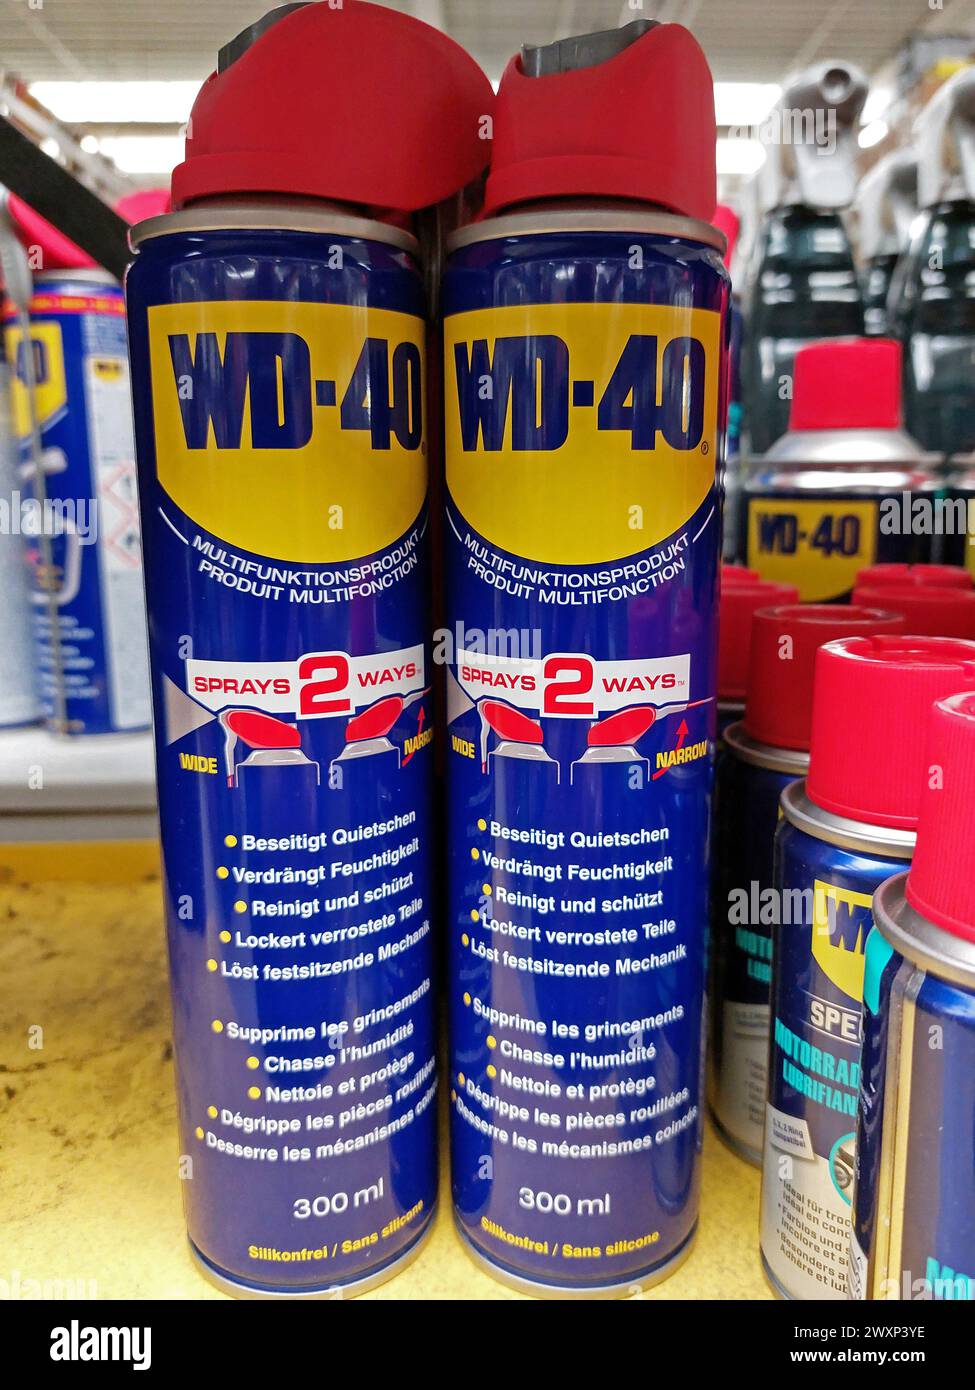 Bottiglie spray WD-40 in un negozio di ferramenta Foto Stock